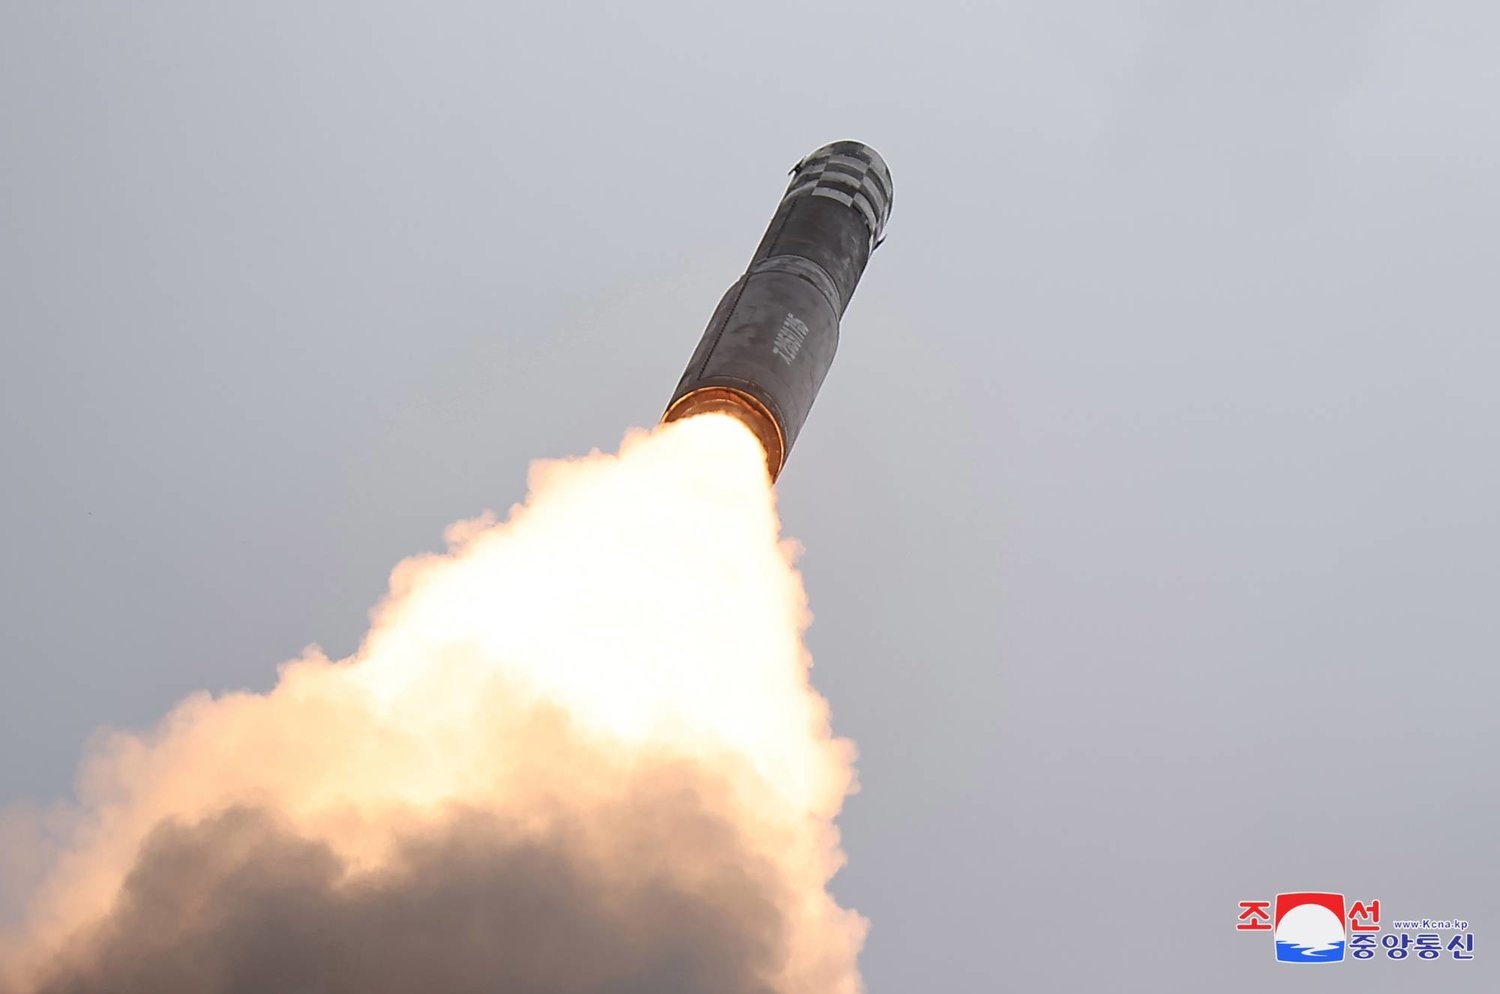 كوريا الشمالية تطلق عدة صواريخ «كروز» باتجاه البحر الأصفر